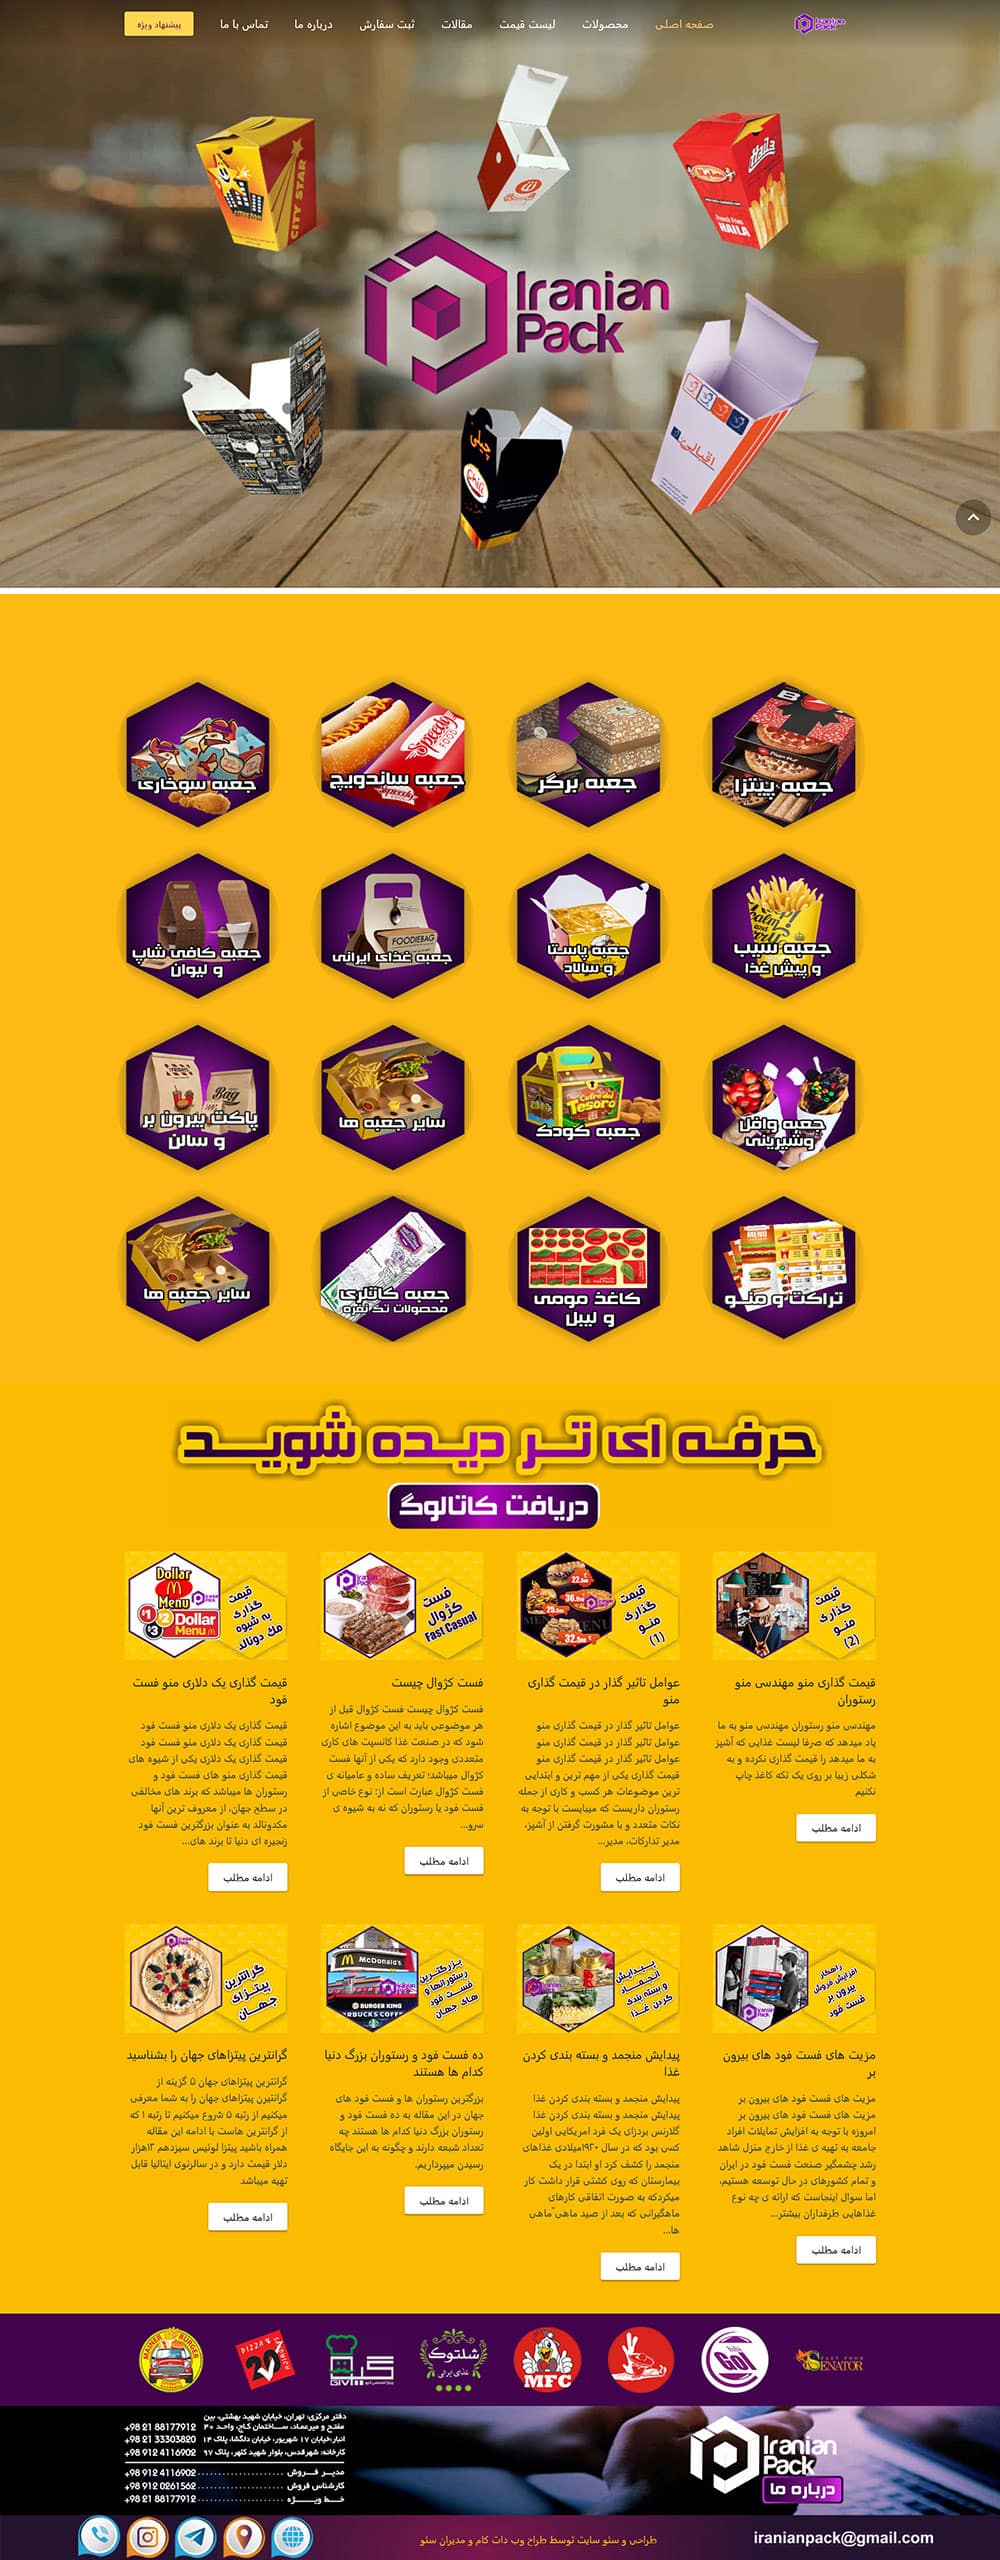 طراحی سایت تولید جعبه ایرانیان پک